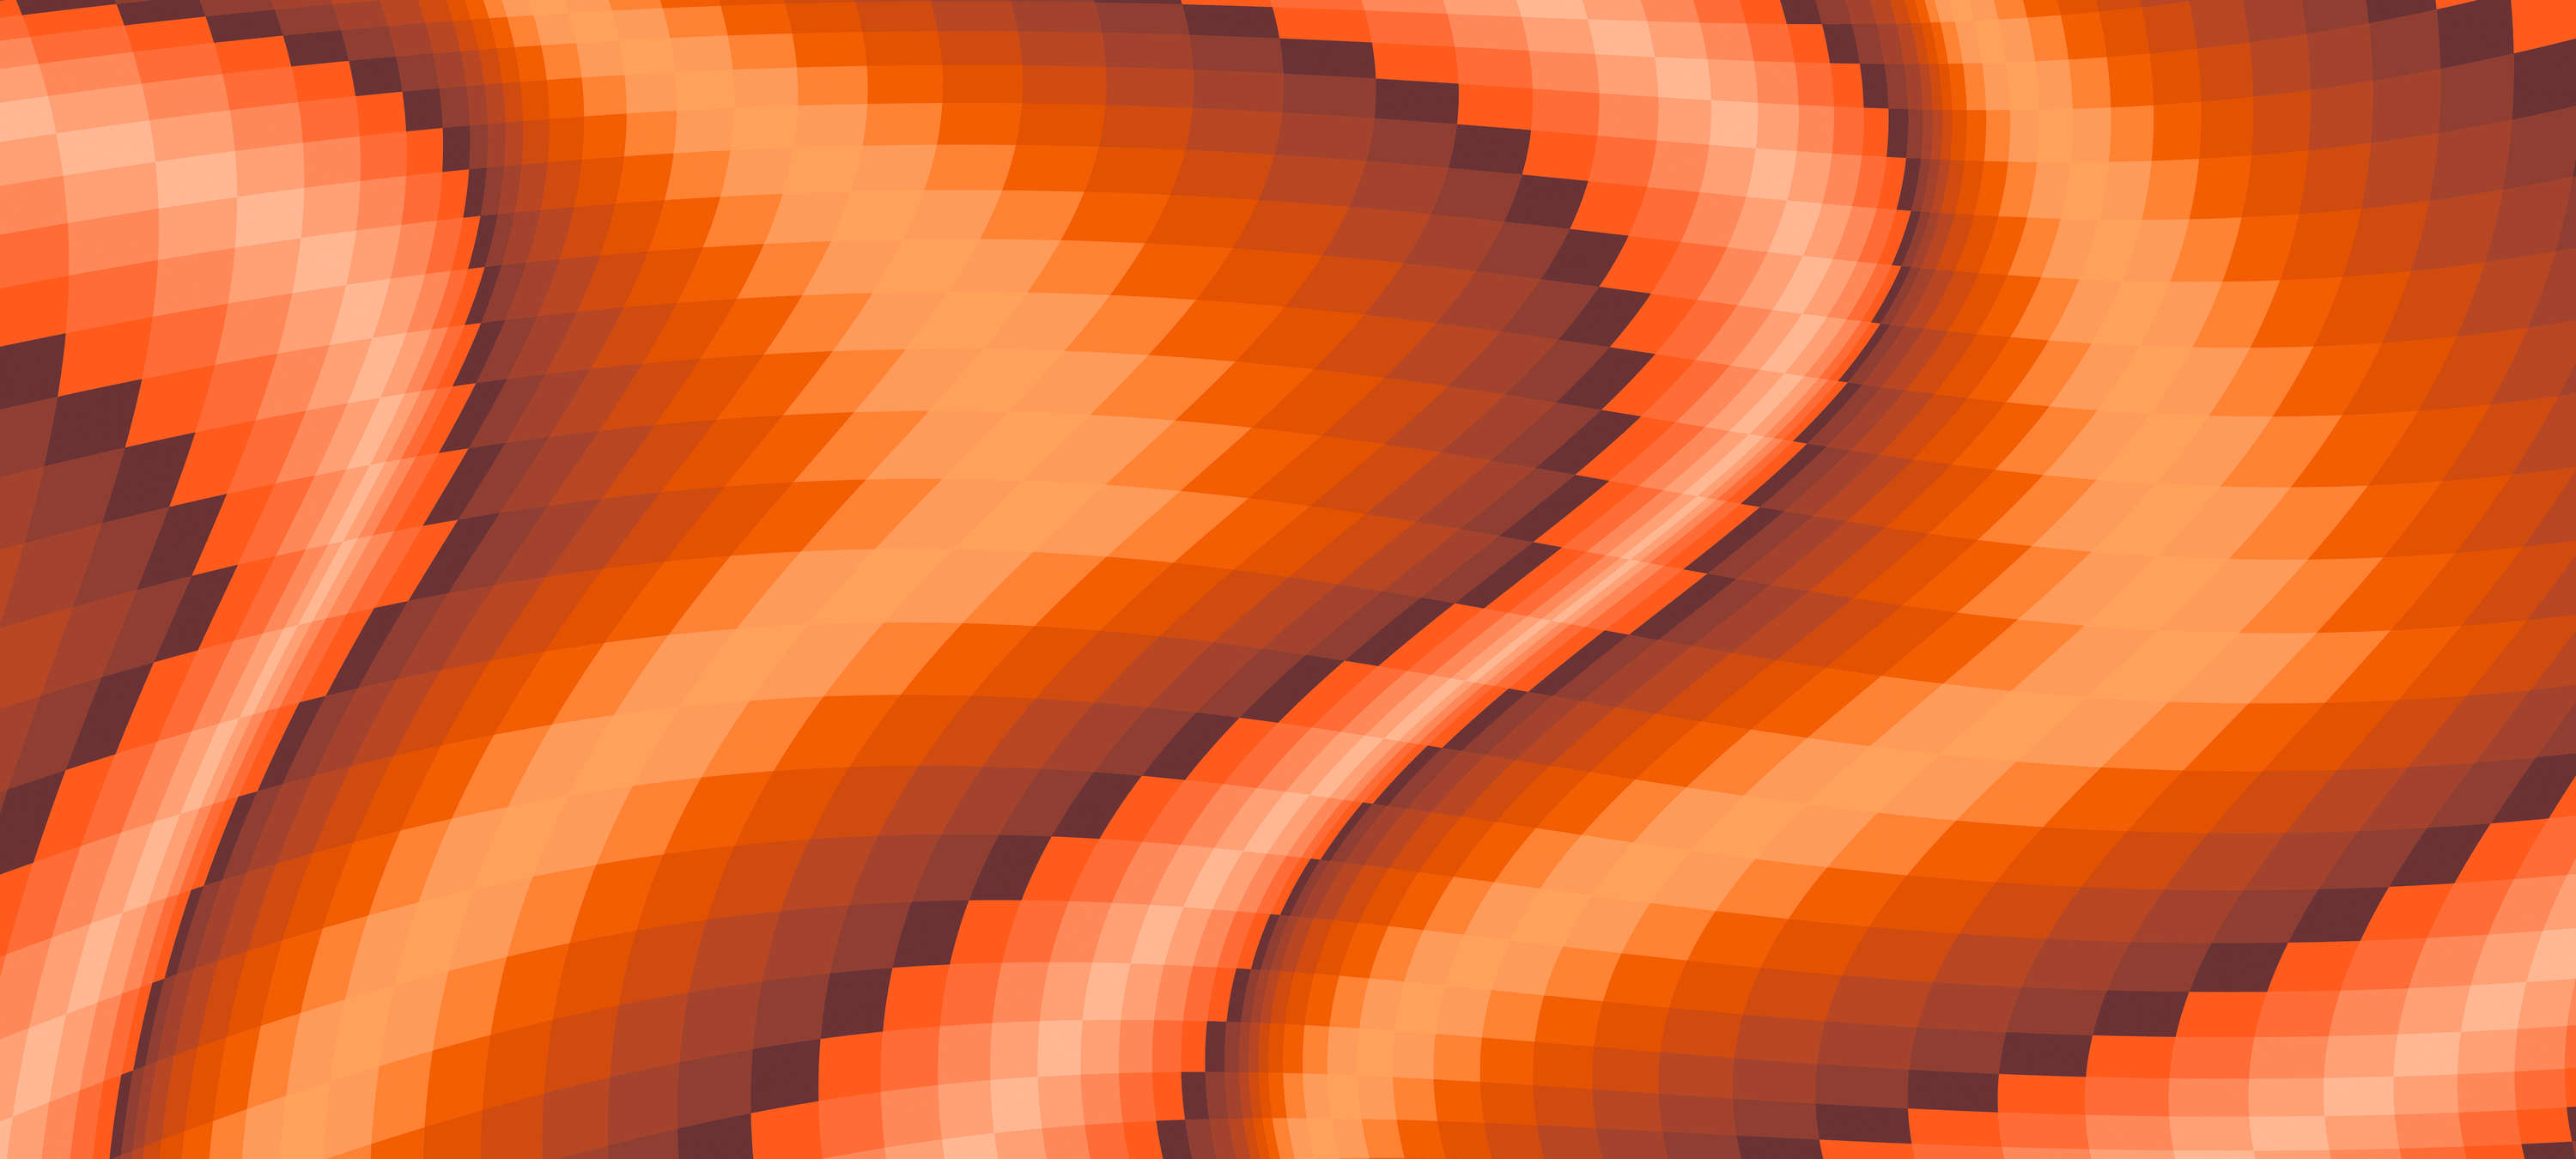             Carta da parati moderna con design grafico ed effetto prospettico - Arancione, Rosso
        